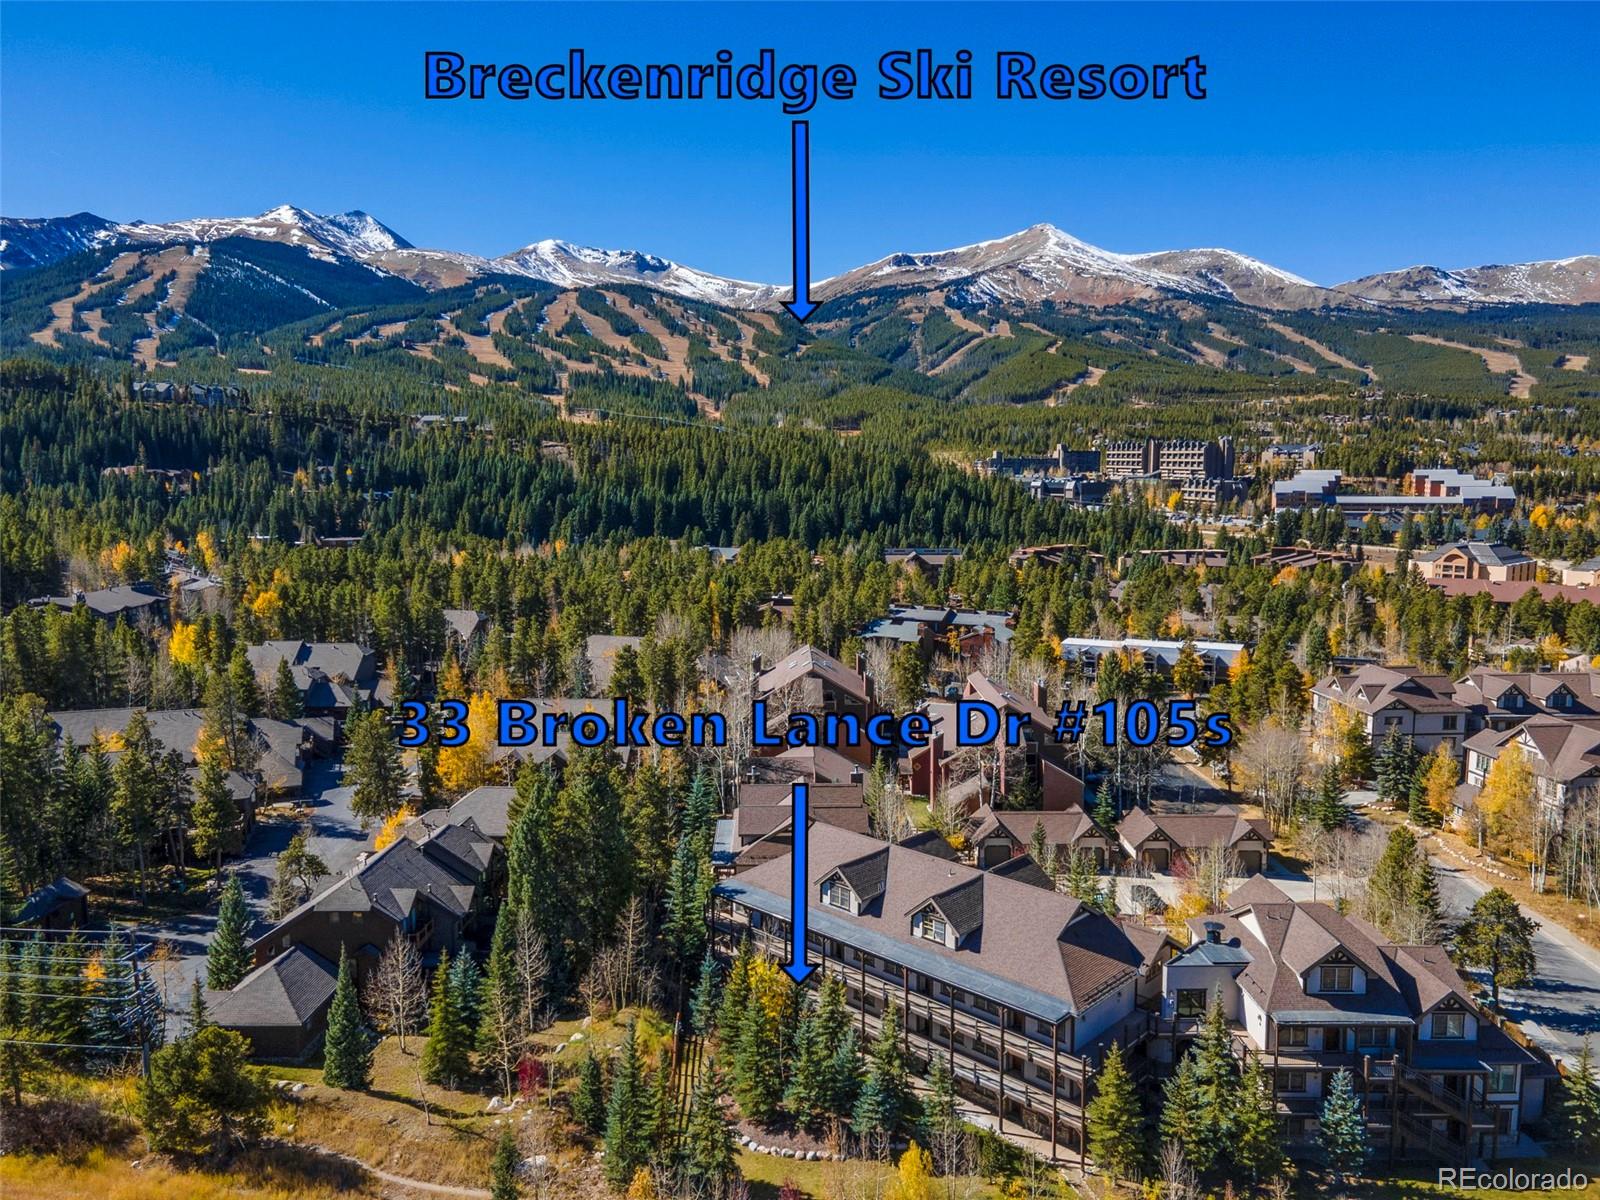 MLS Image #34 for 33  broken lance drive,breckenridge, Colorado